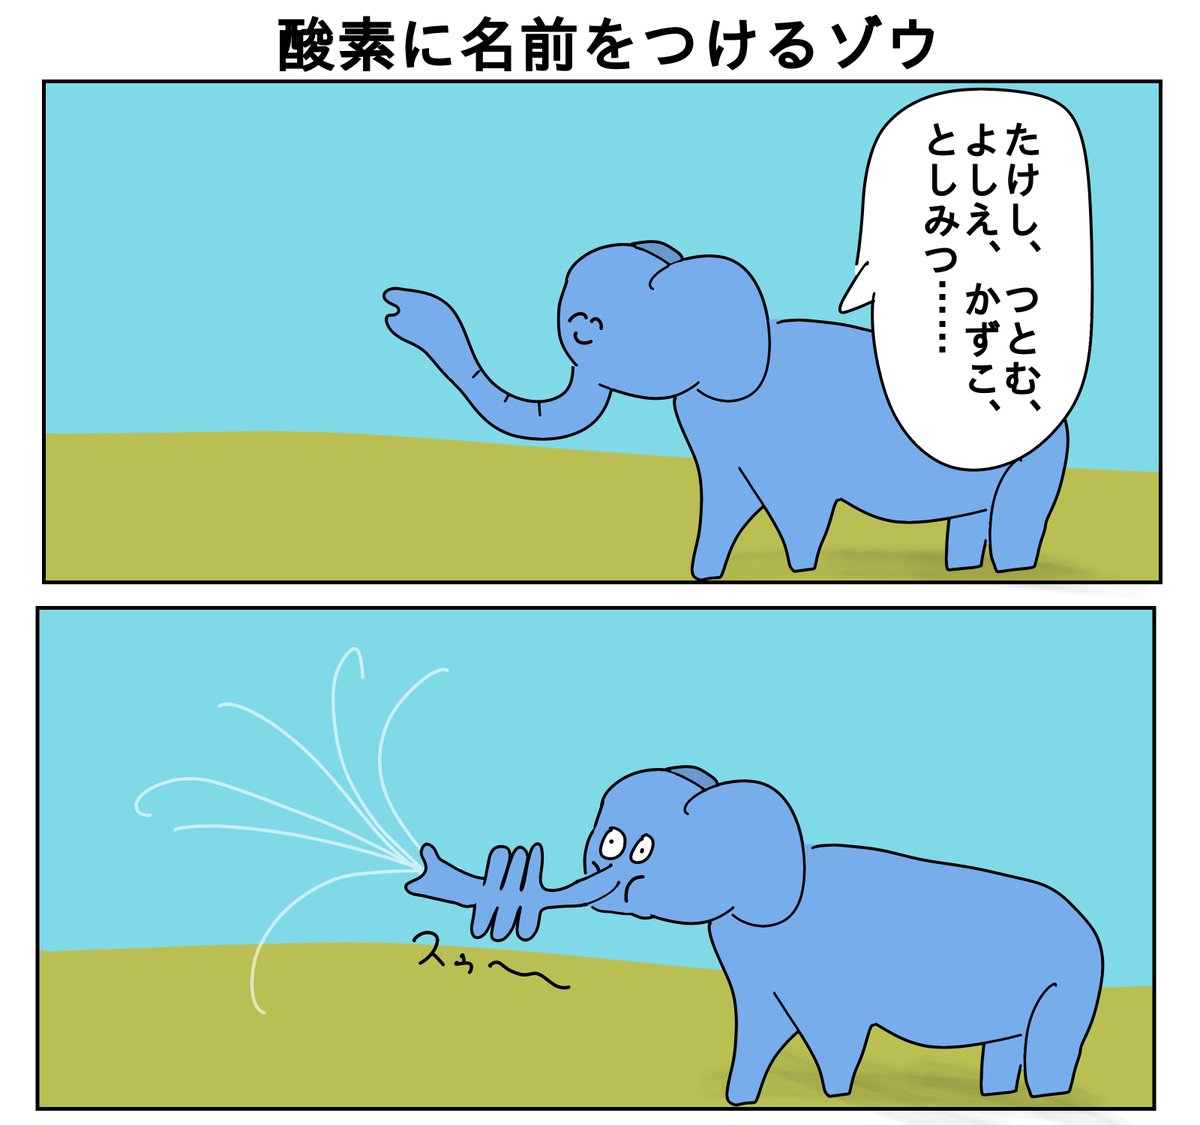 【2コマ漫画】

酸素に名前を付けるゾウ 